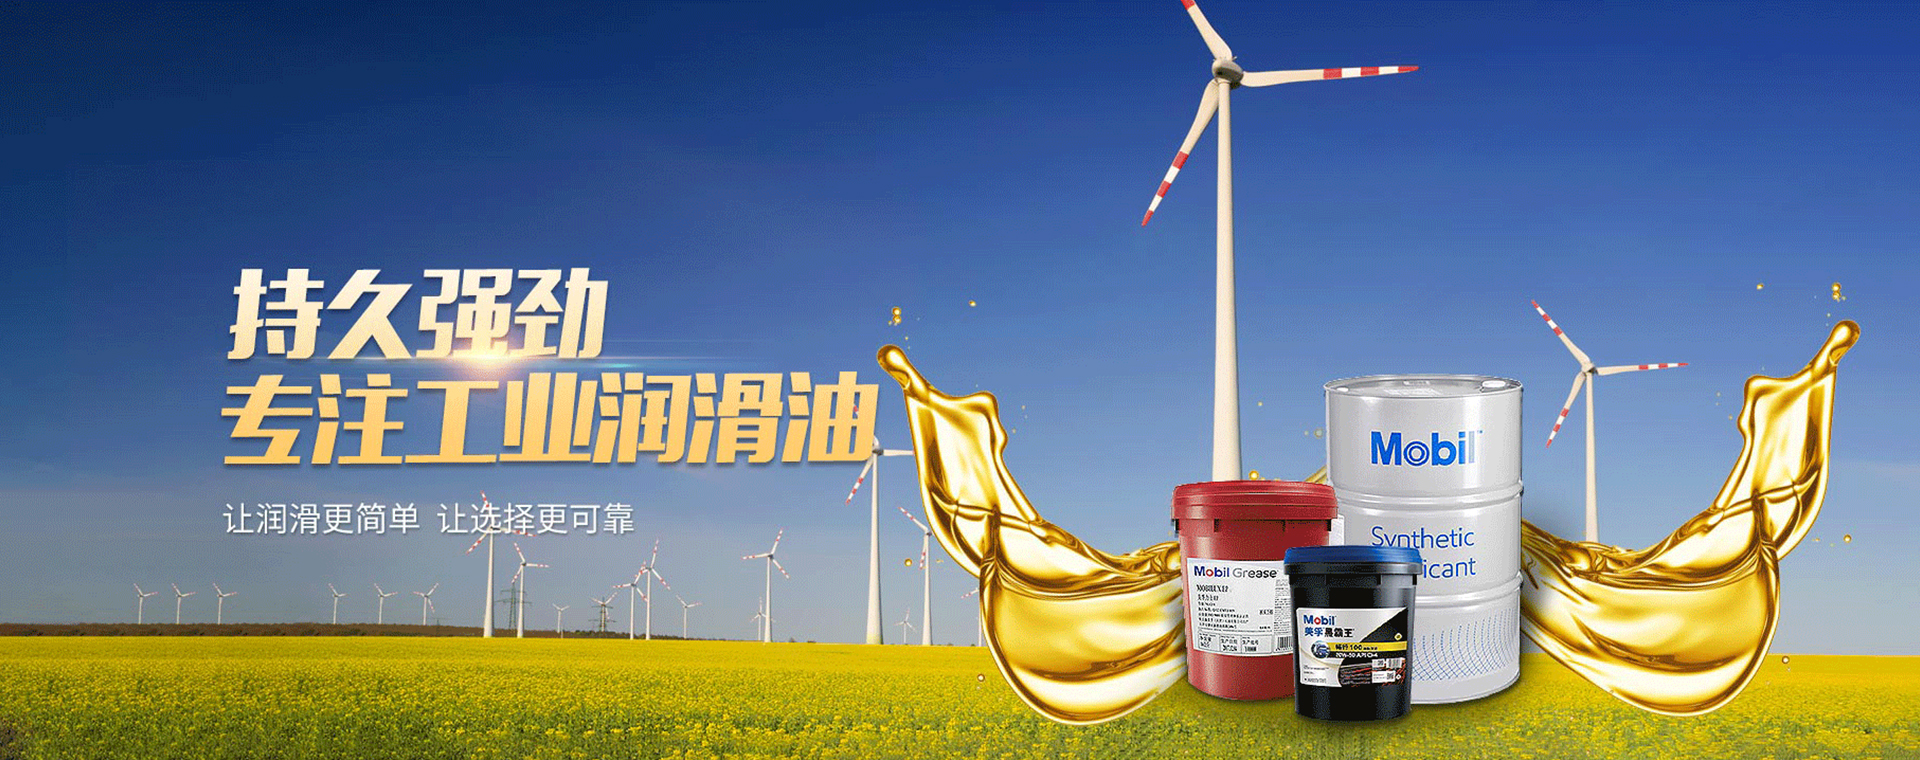 內蒙古工業潤滑油內蒙古潤滑油呼和浩特潤滑油內蒙古工業潤滑油